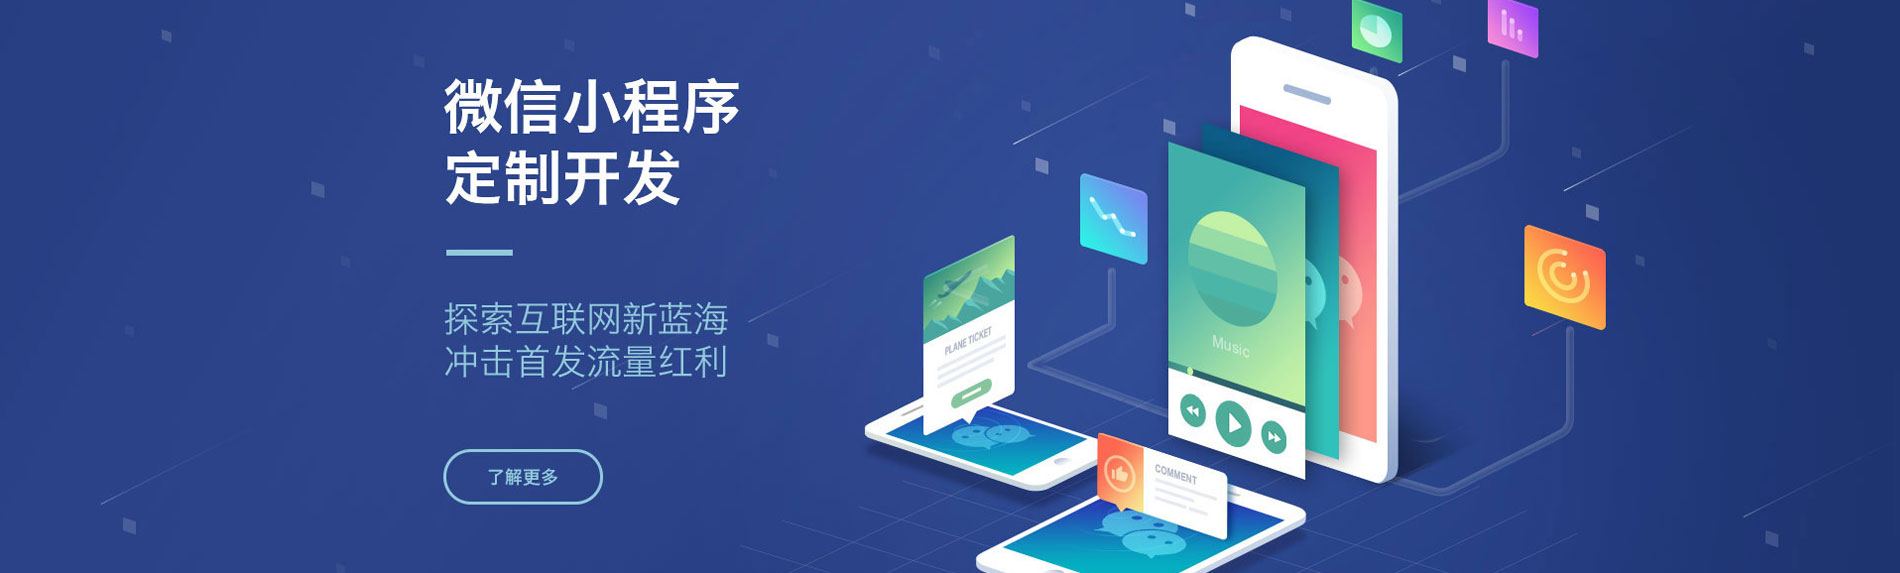 广州小程序开发可降低成本广州艾谷科技小程序软件开发